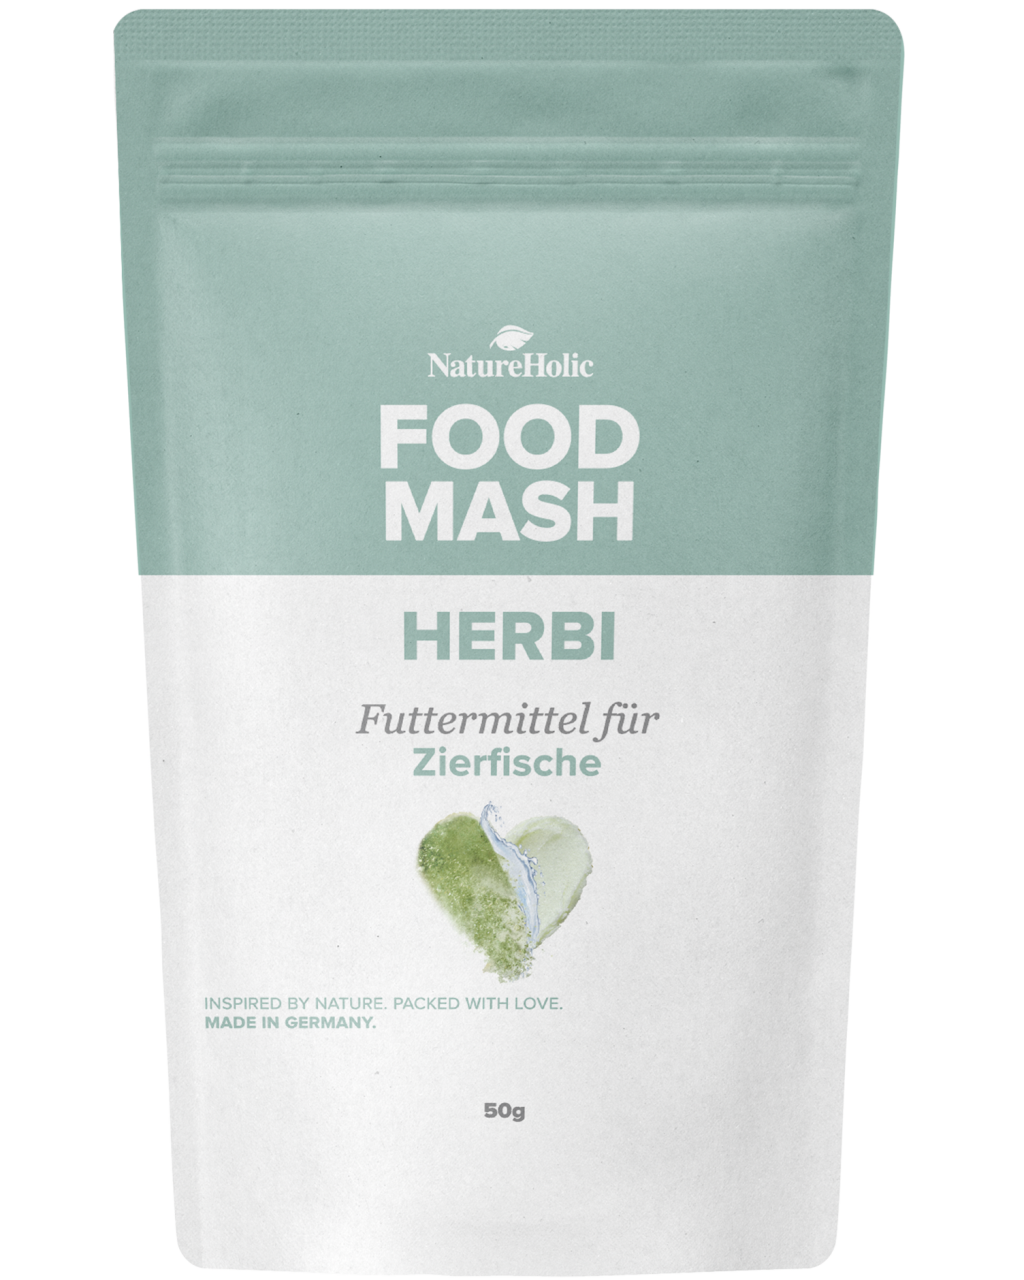 NatureHolic Food Mash - Herbi - 50g